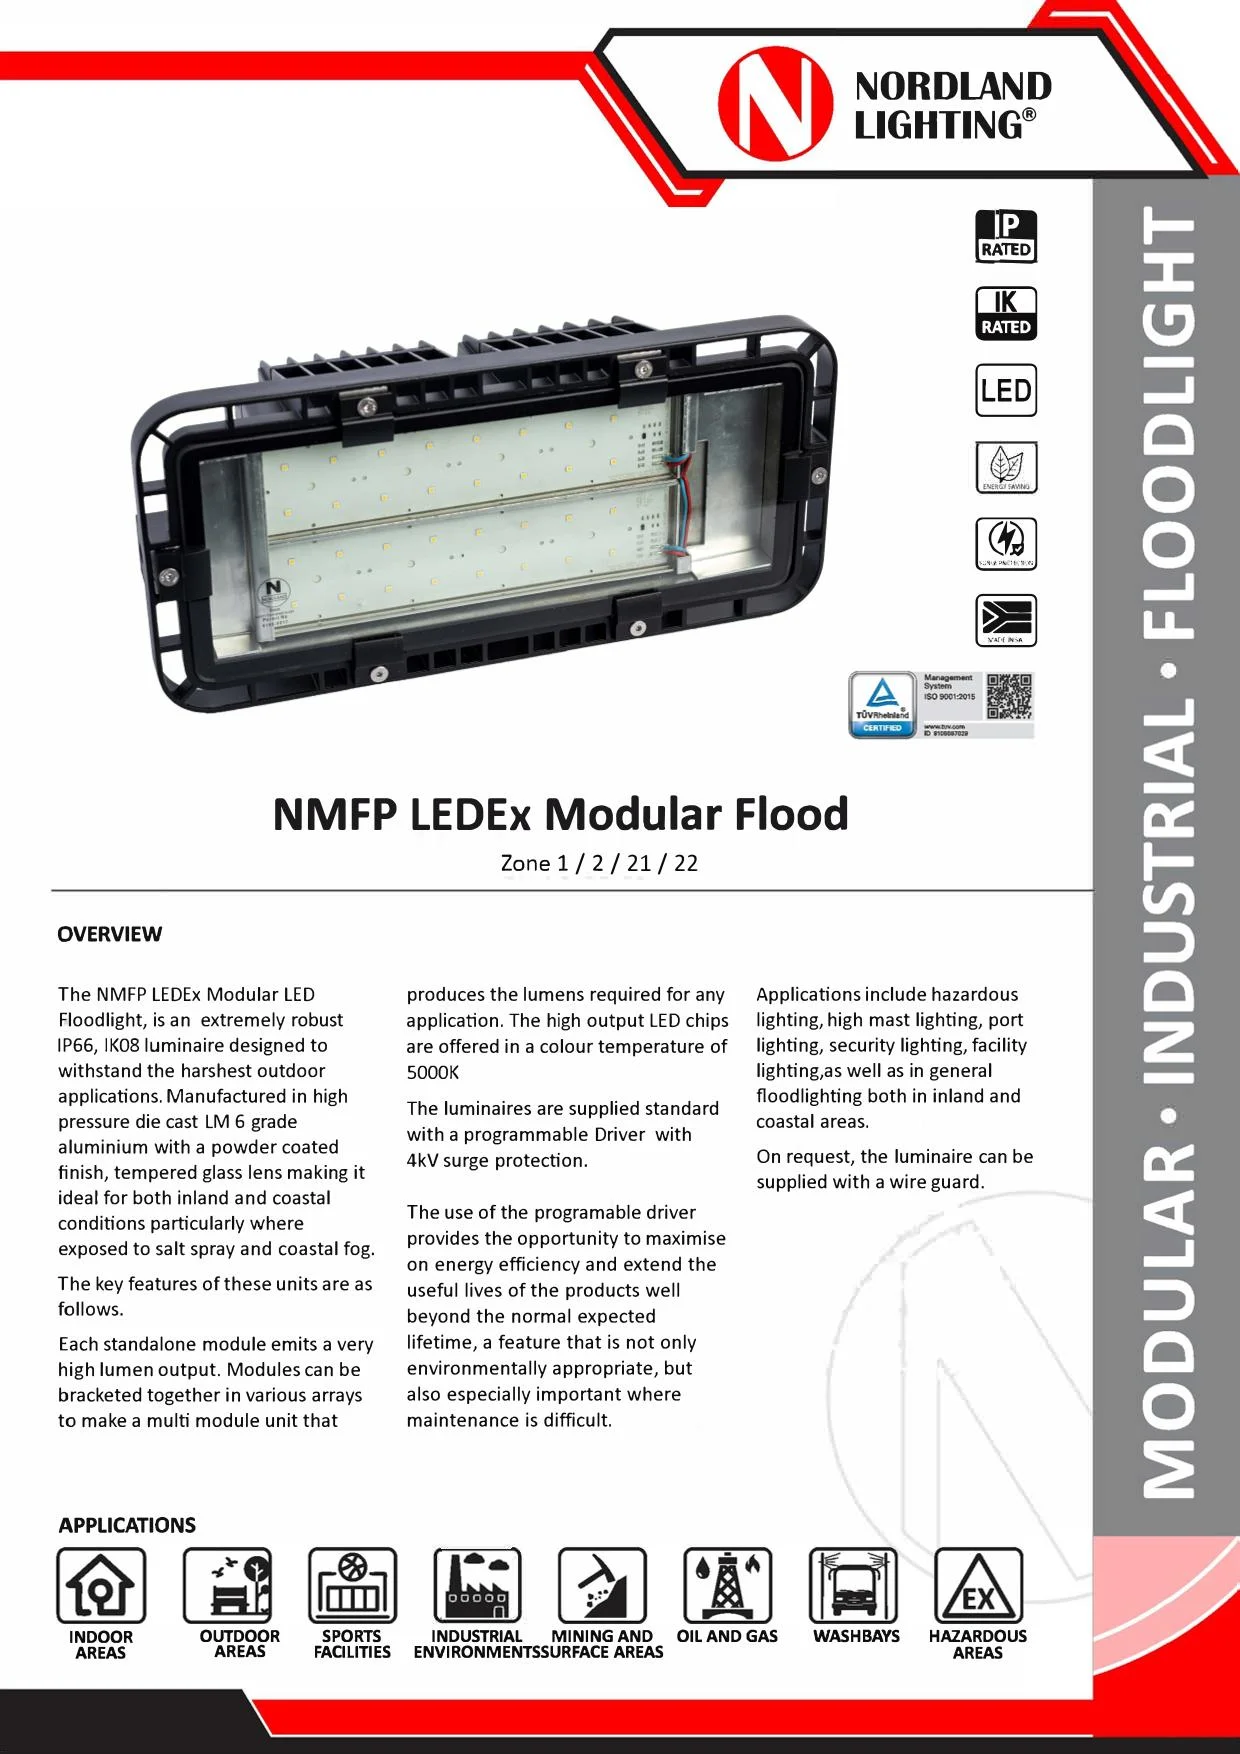 NL54  Nordland NMFP LEDEx Zone 1 Modular Flood